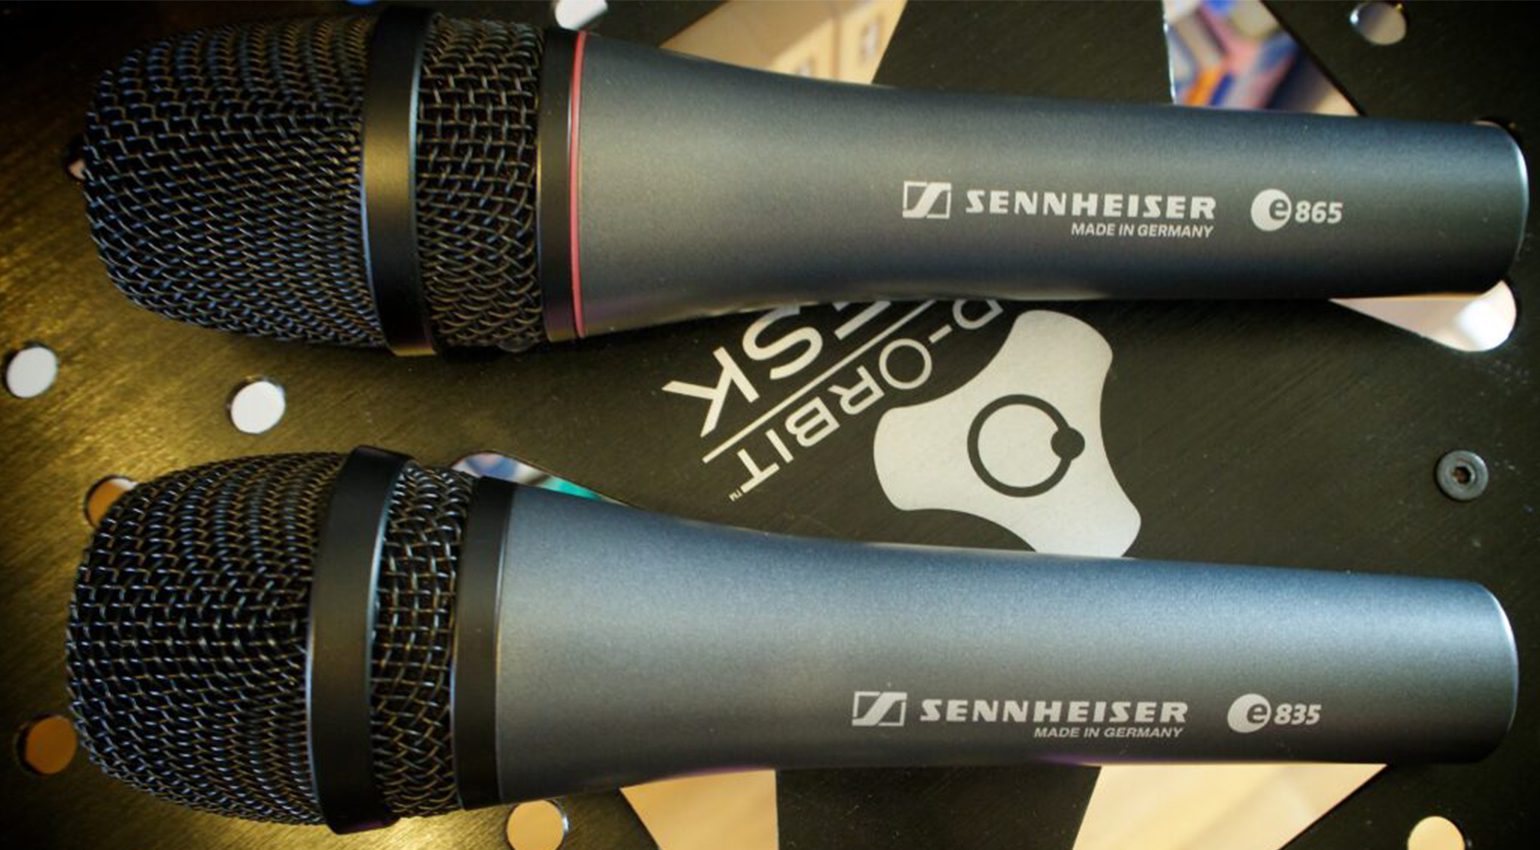 Questi due microfoni Sennheiser sono diversi. Quello in basso è un microfono a bobina mobile. Quello in alto è un microfono a condensatore che richiede l’alimentazione